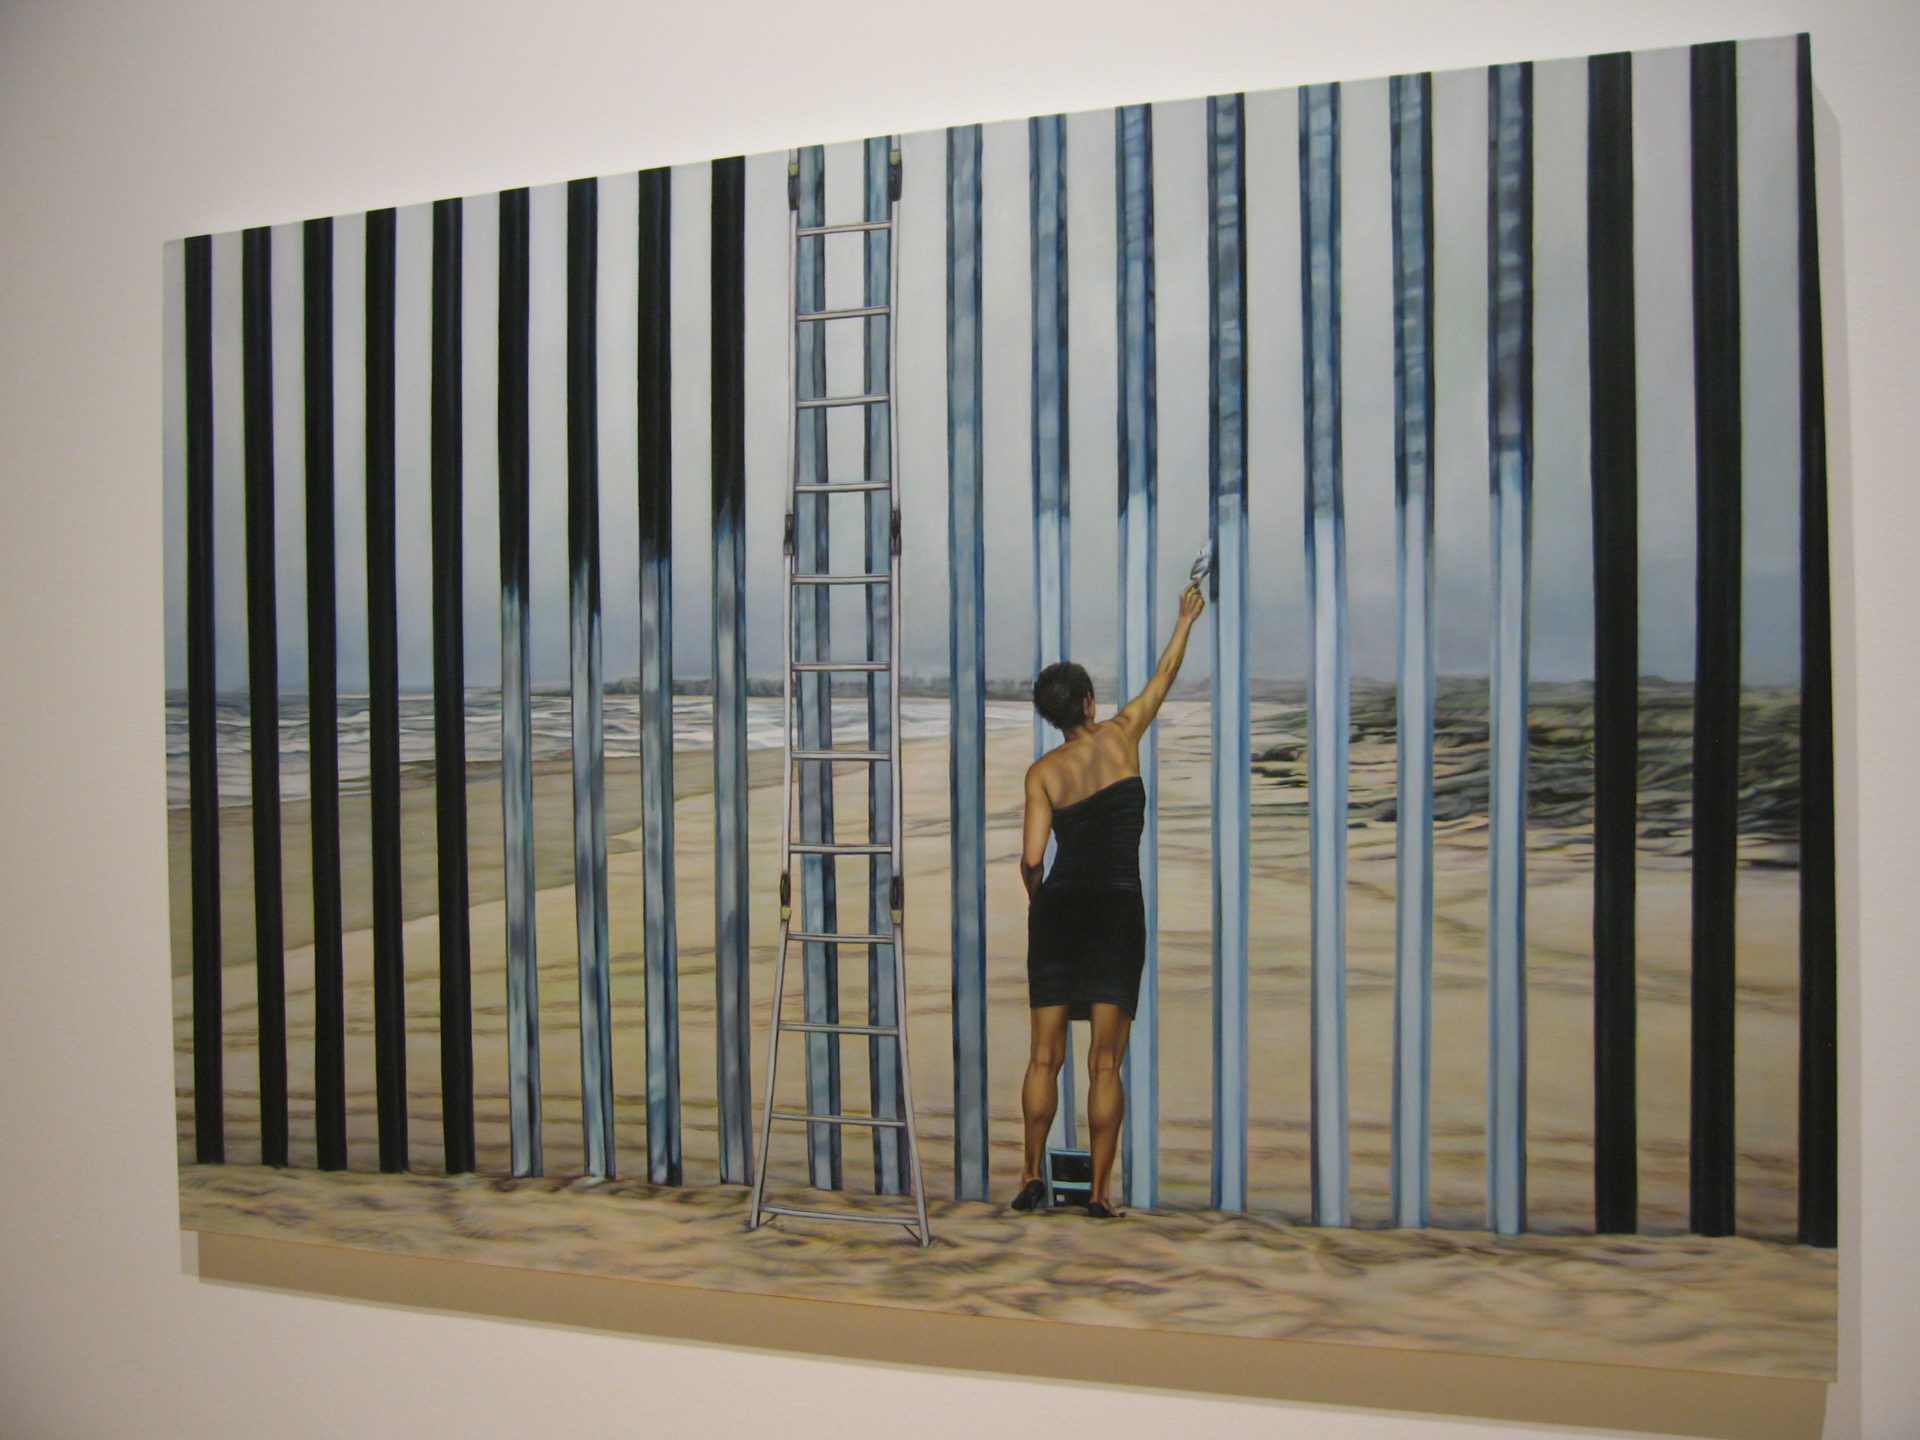 Die Grenze löschen, von Ana Teresa Fernandez, fotografiert von Elisabeth Aeberli im Kunstmuseum Palm Springs/CA